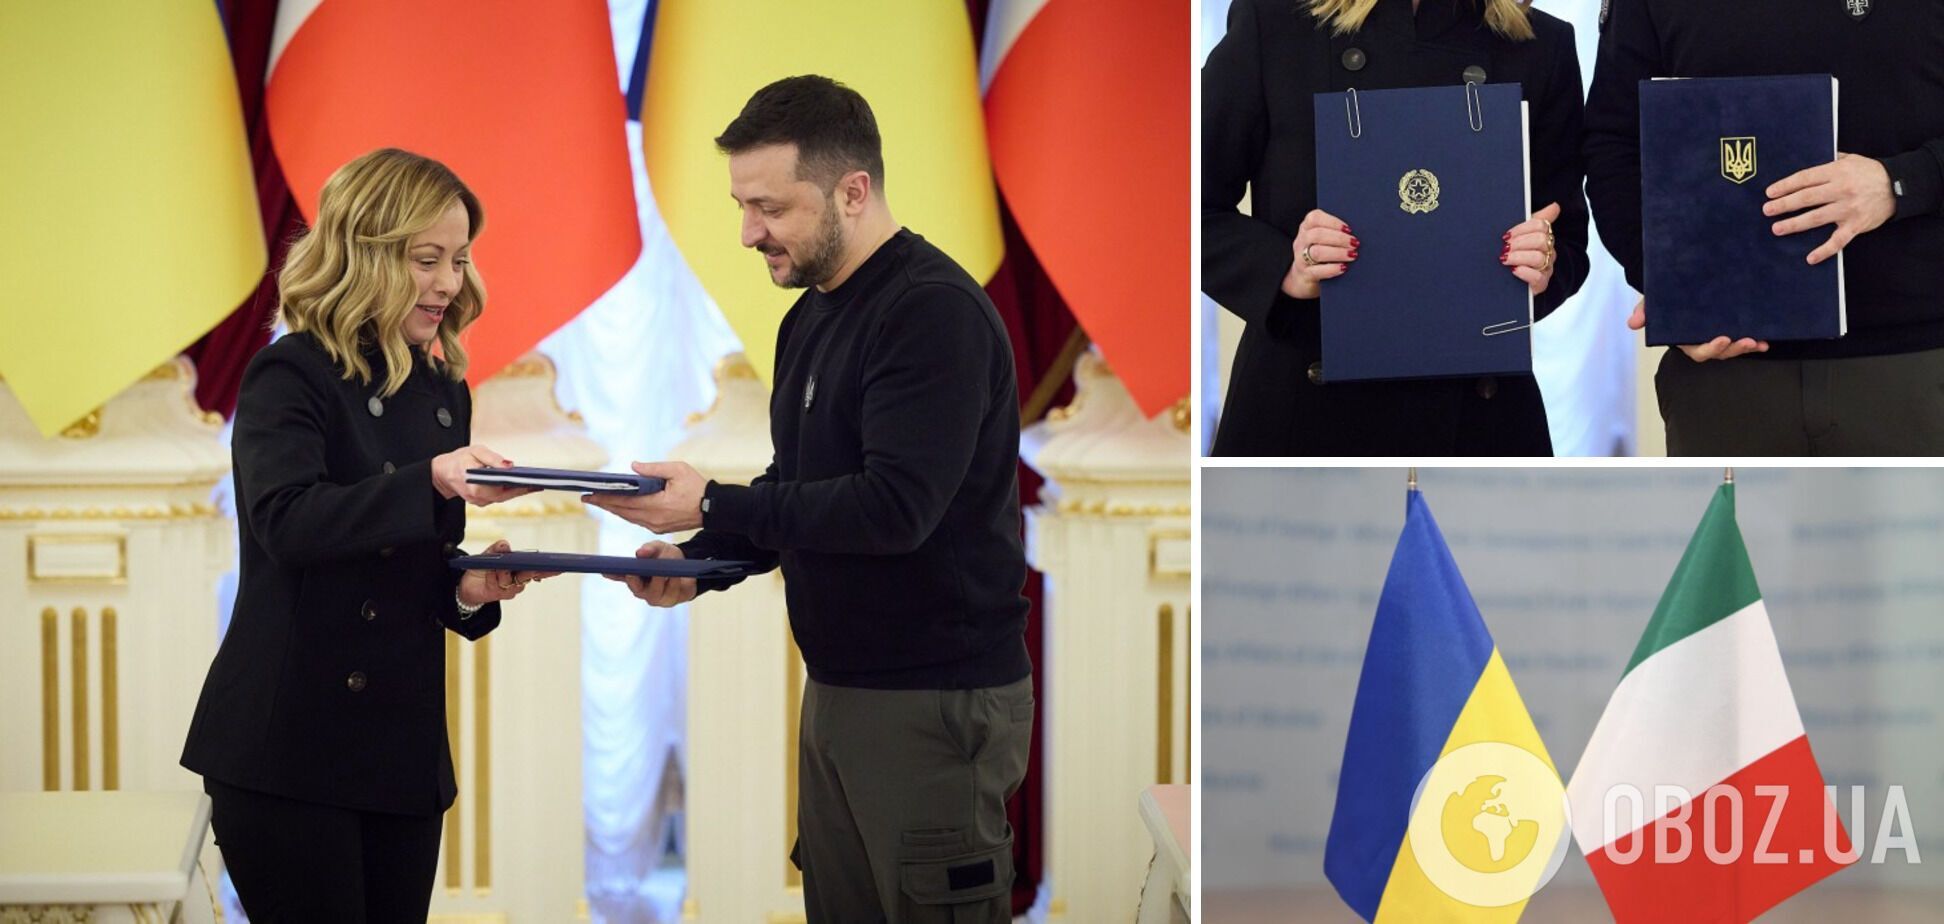 Зеленский и Мелони подписали соглашение о безопасности между Украиной и Италией. Фото и видео